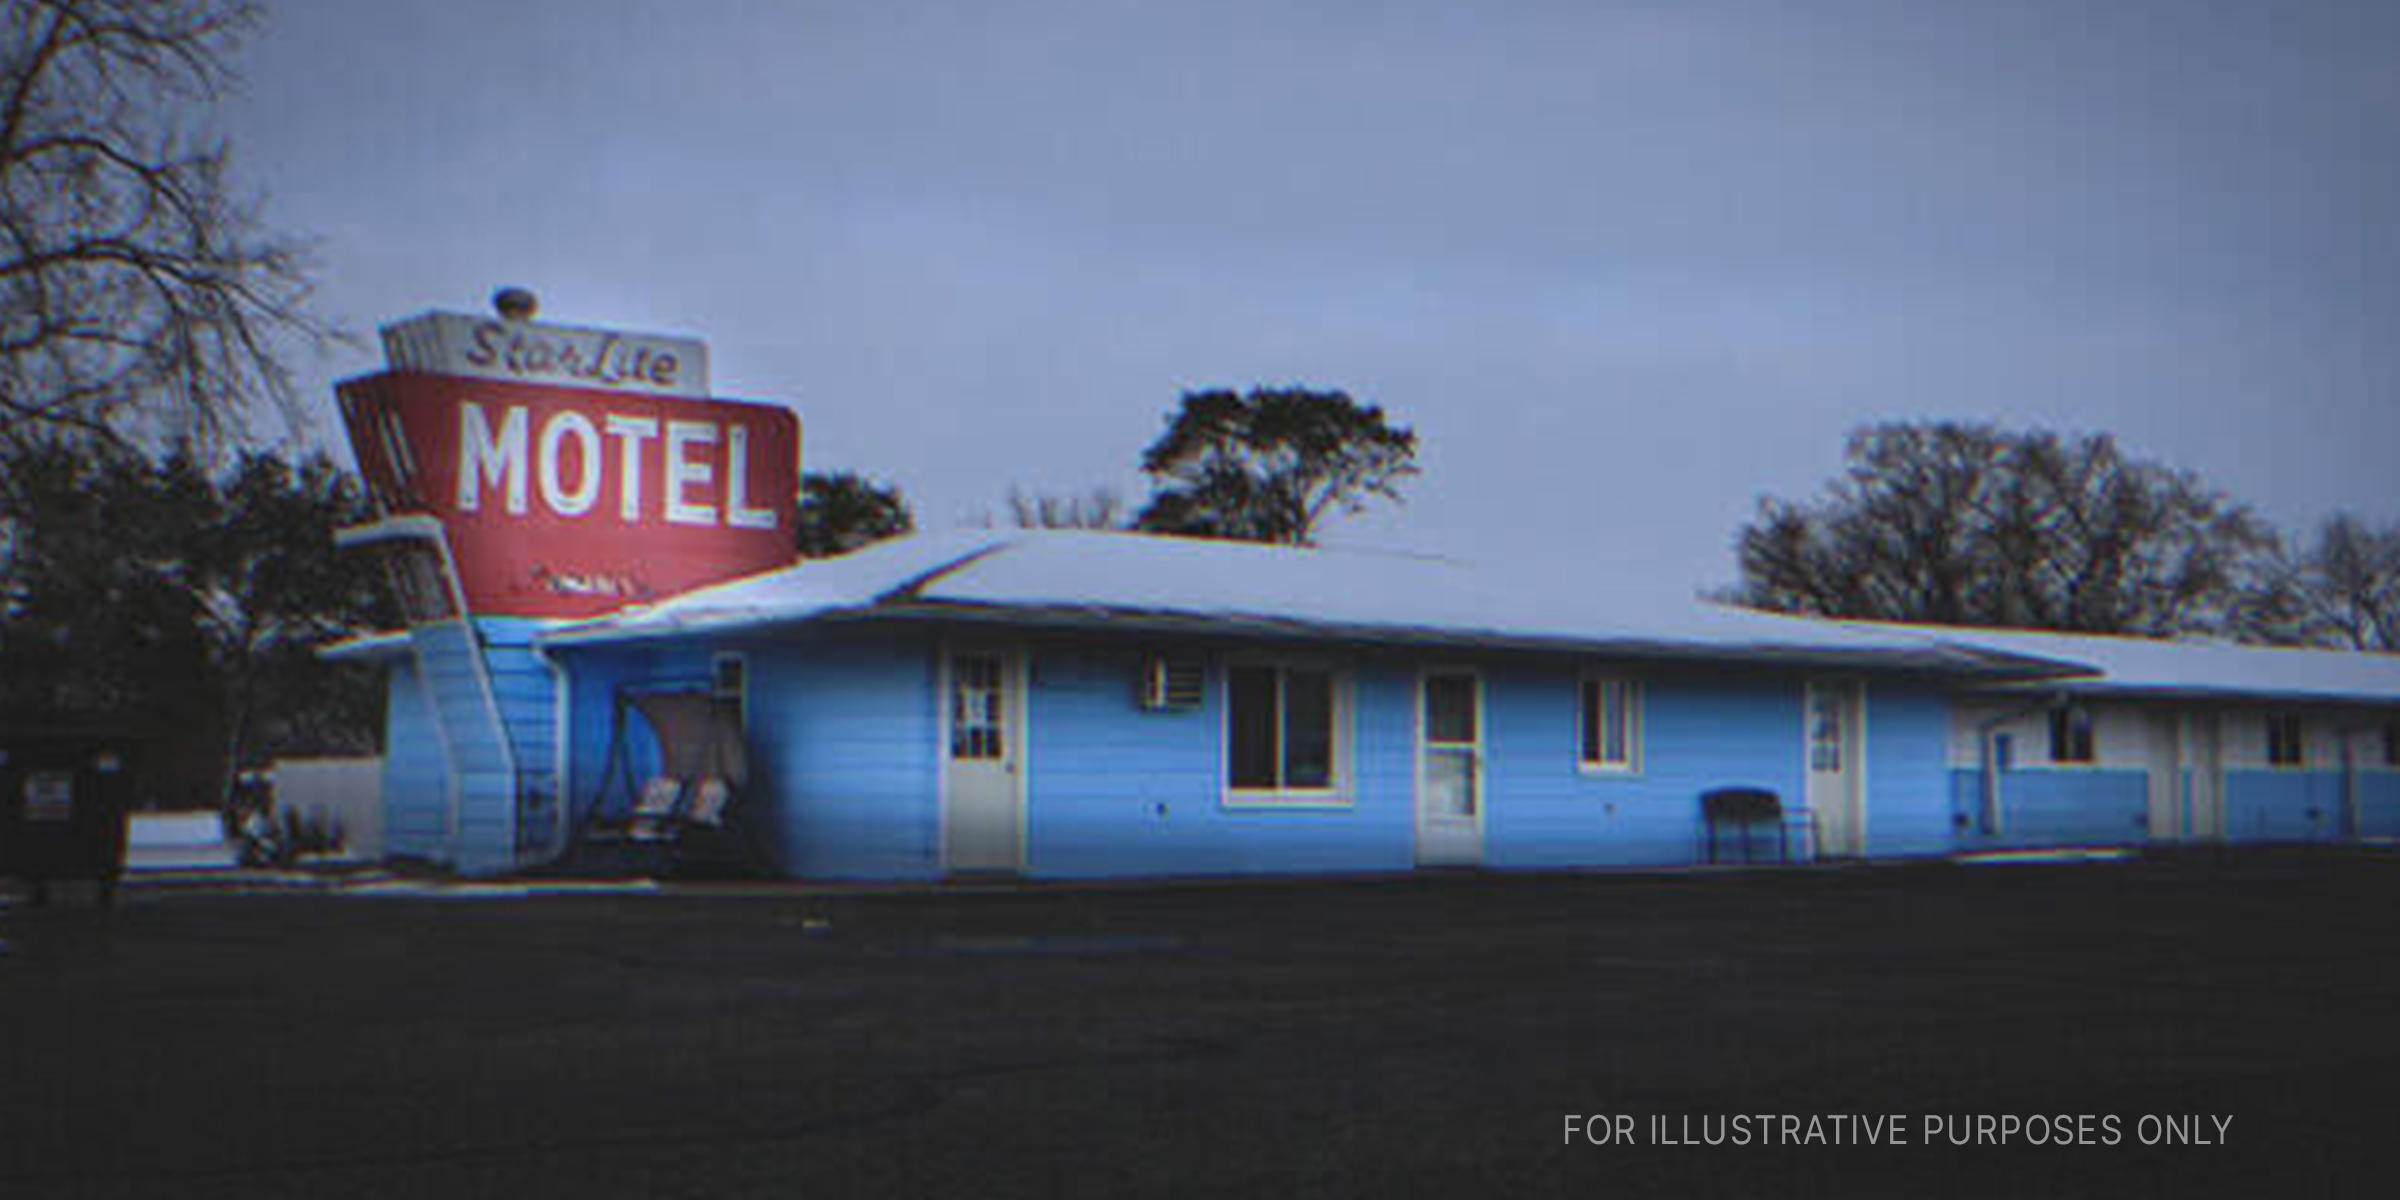 A motel | Source: Shutterstock